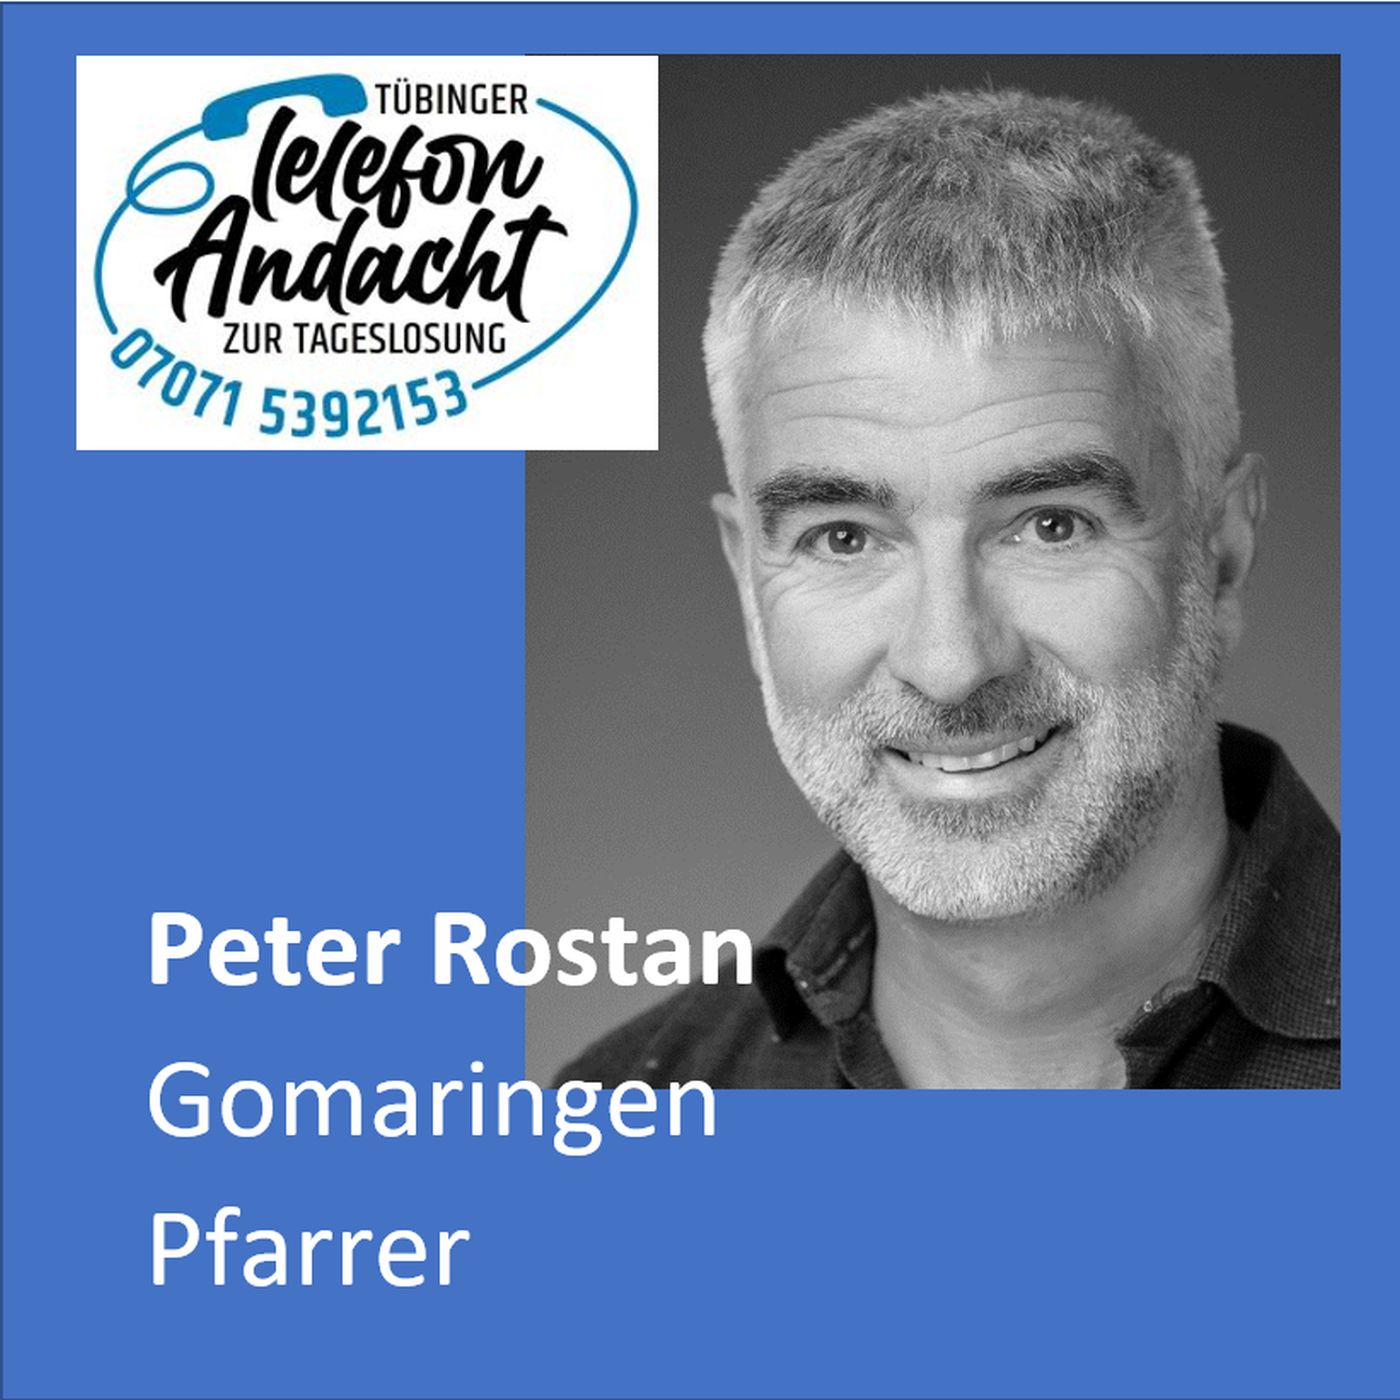 24 07 12 Peter Rostan